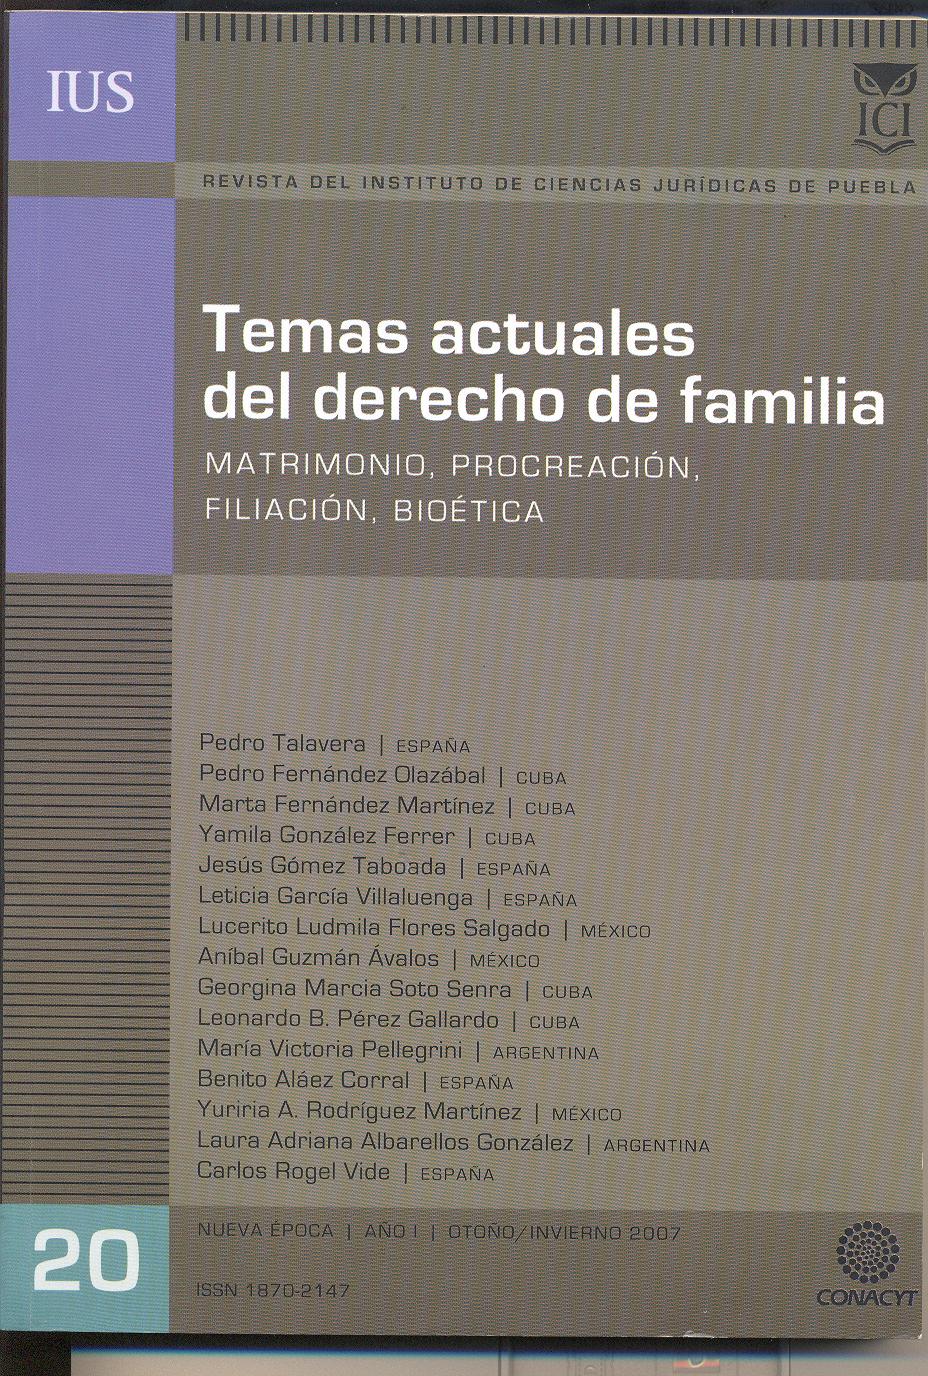 					Ver Vol. 1 Núm. 20 (2007): Temas actuales del derecho de familia. Matrimonio, Procreación, Filiación, Bioética
				